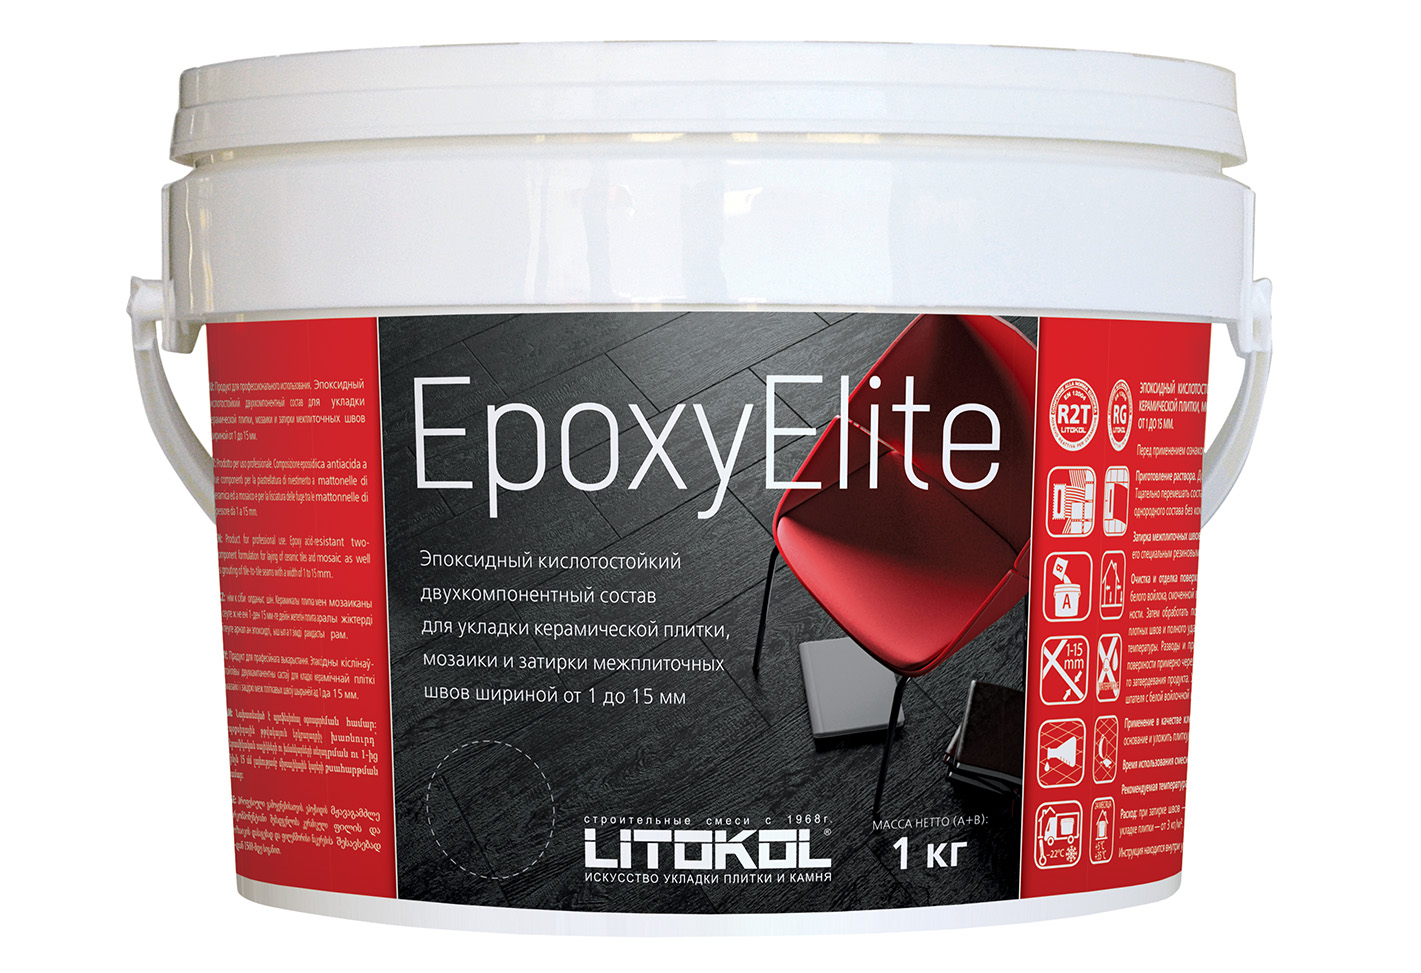  Epoxyelite EPOXYELITE E.06 Мокрый асфальт. 1 кг - фото 2